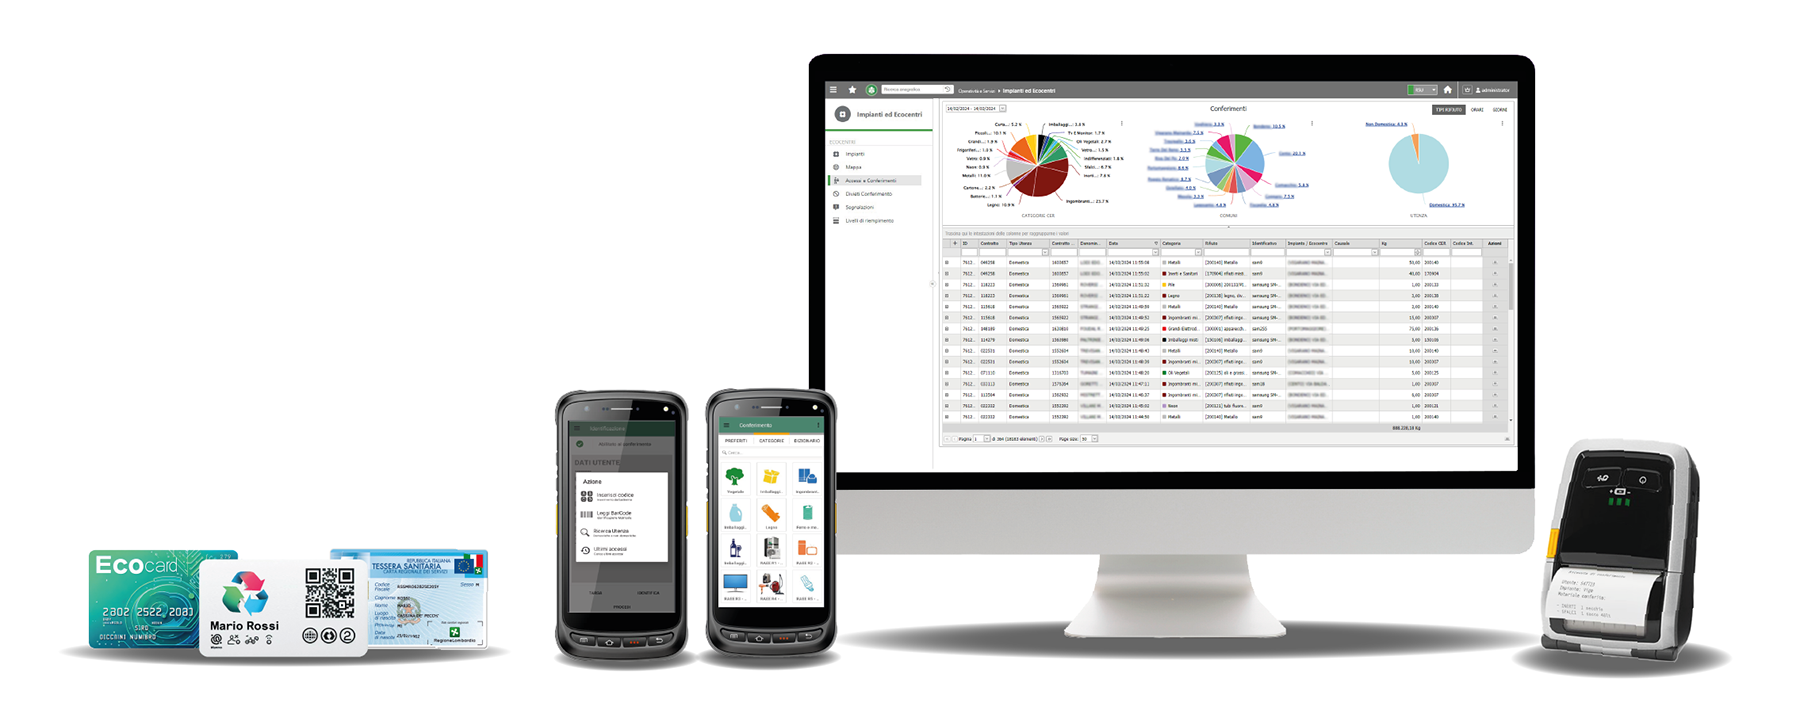 Software e app per gestione Ecocentri CRM informatizzati